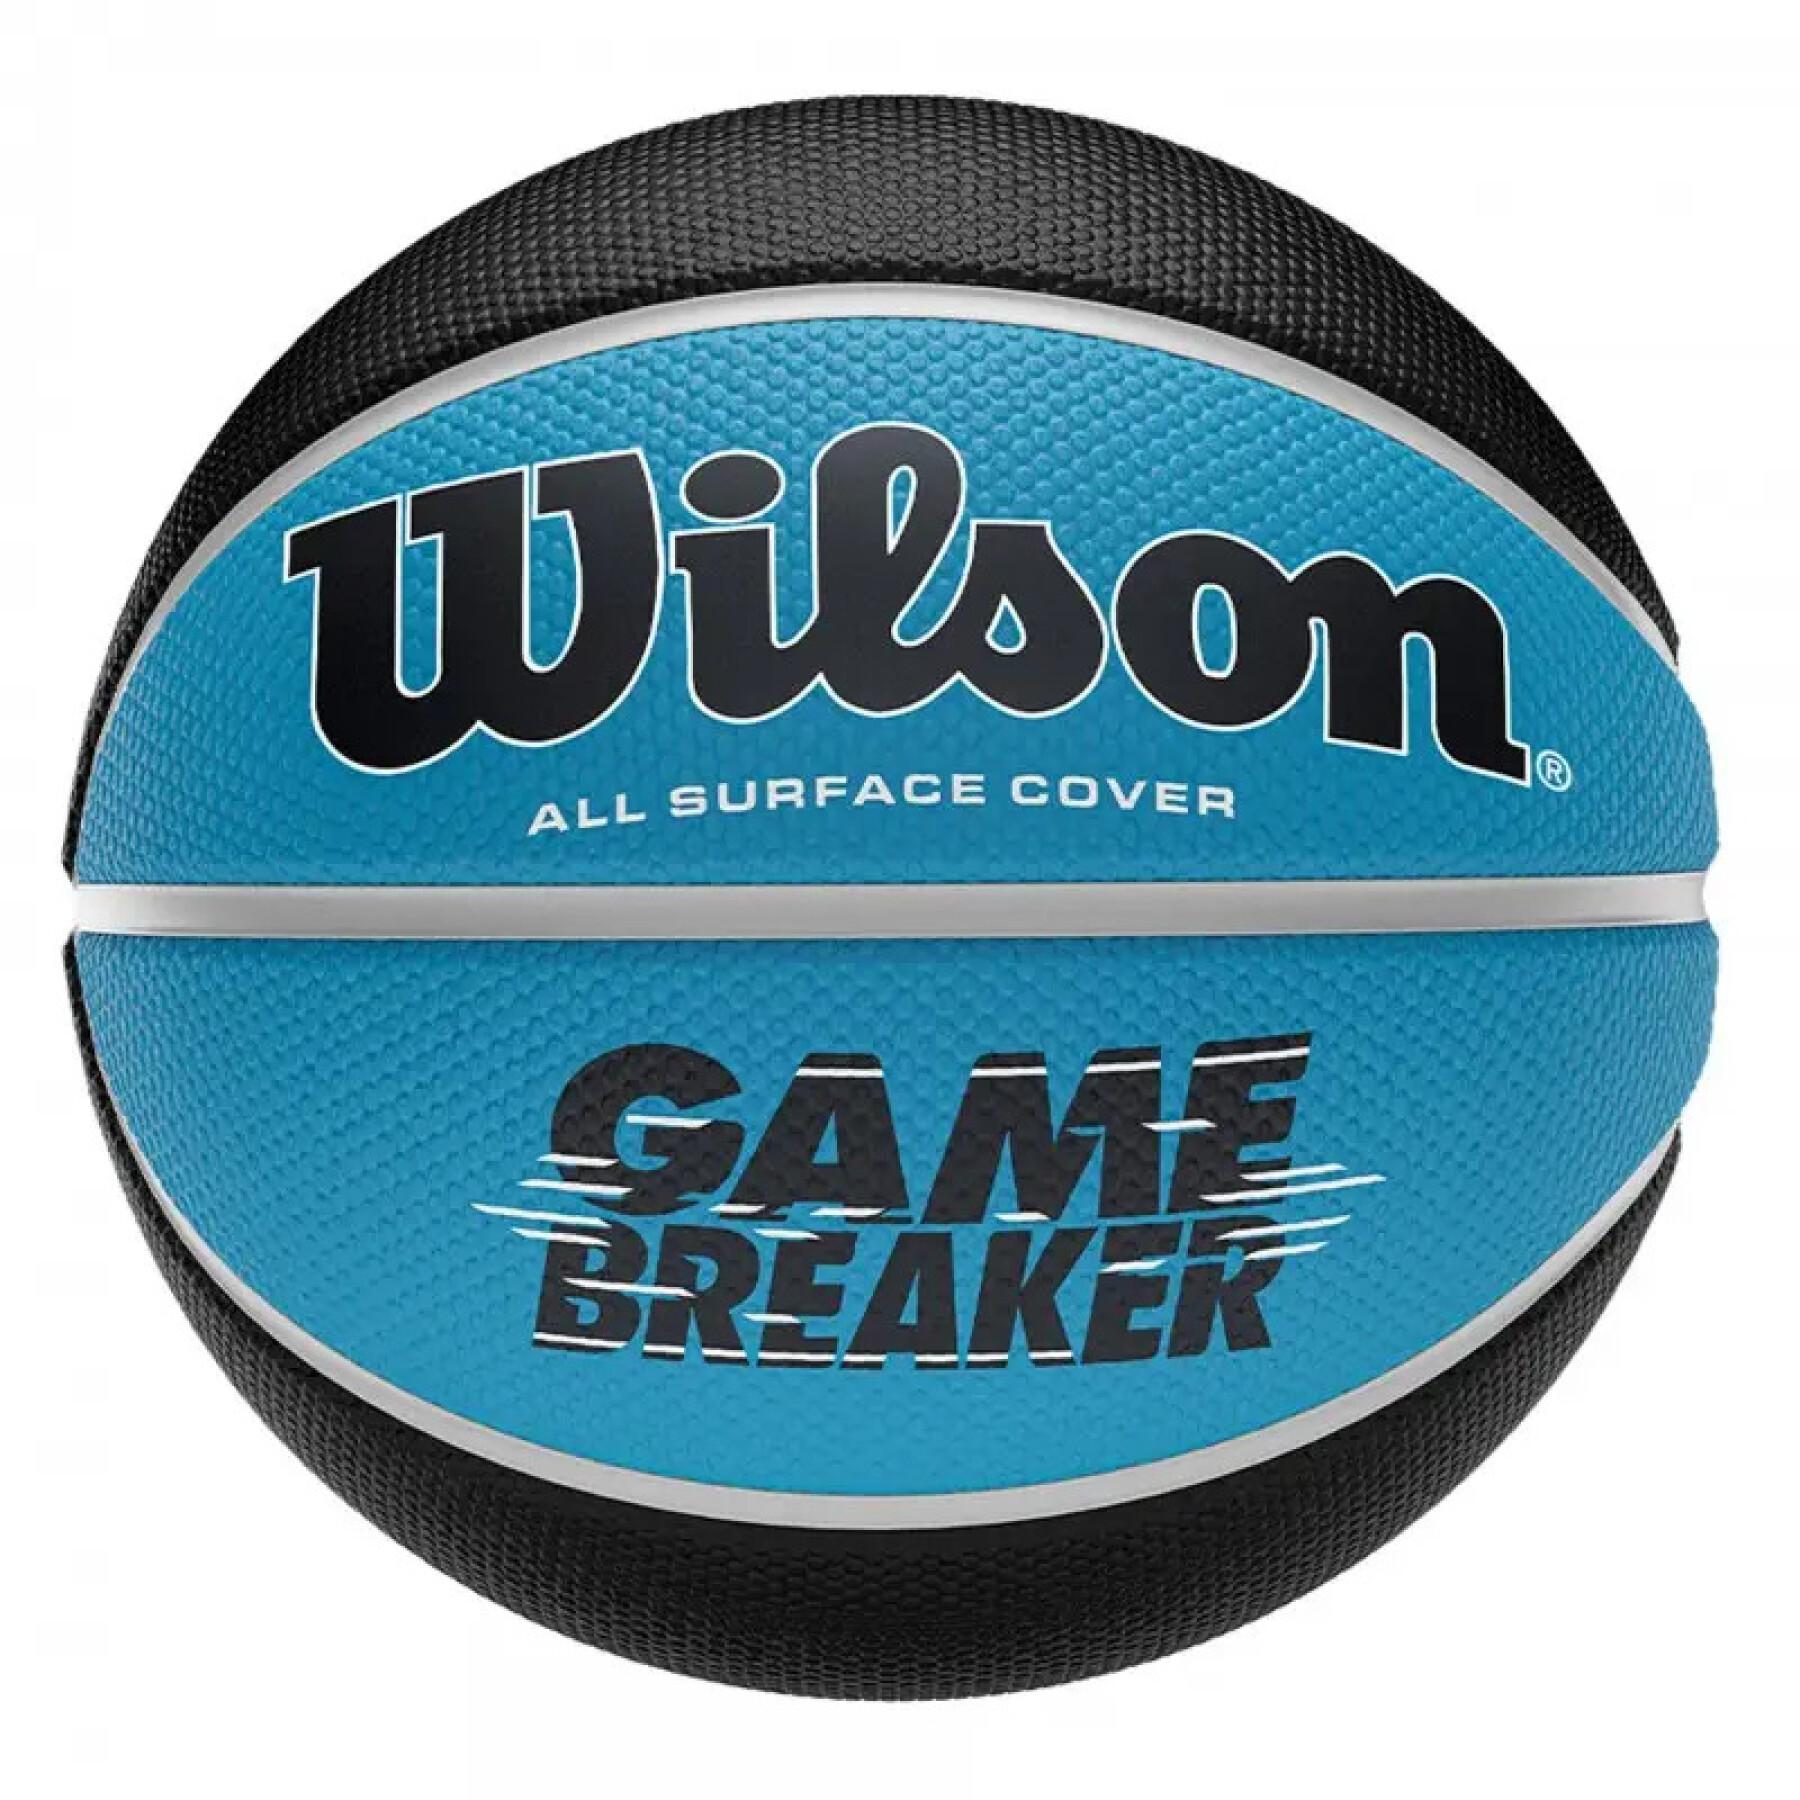 Basquetebol Wilson Gamebreaker